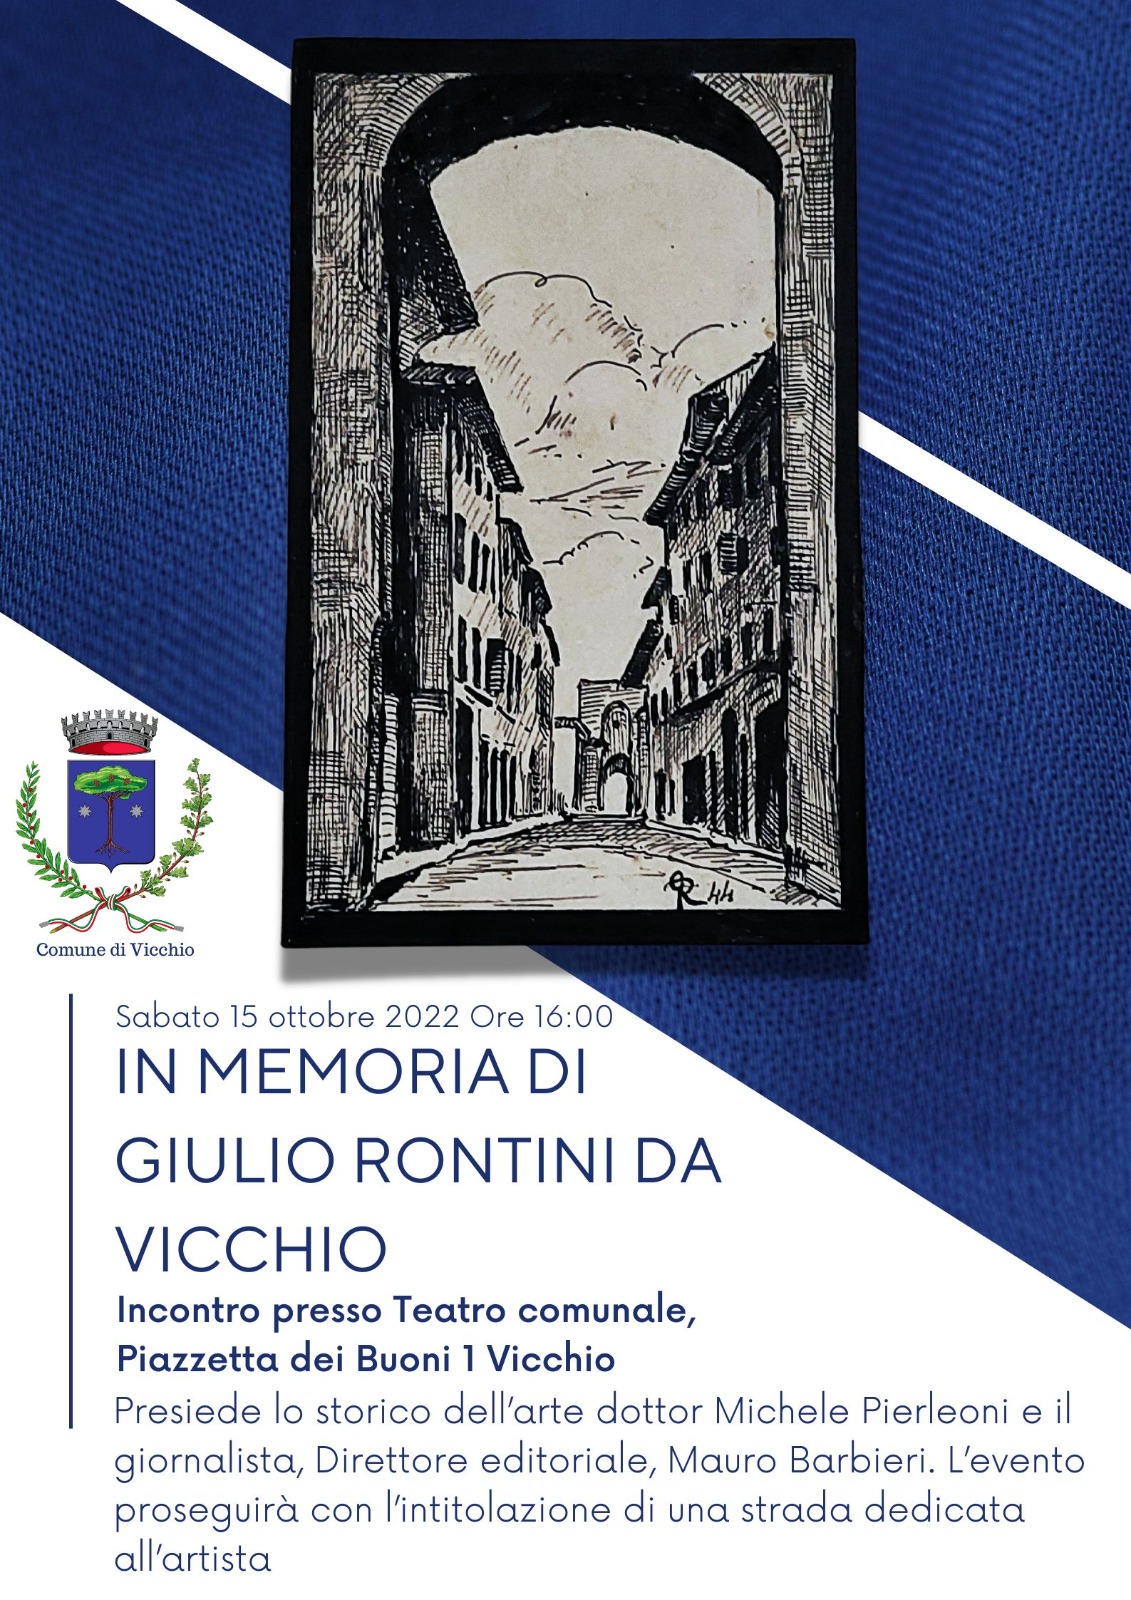 Giulio Rontini "da Vicchio"